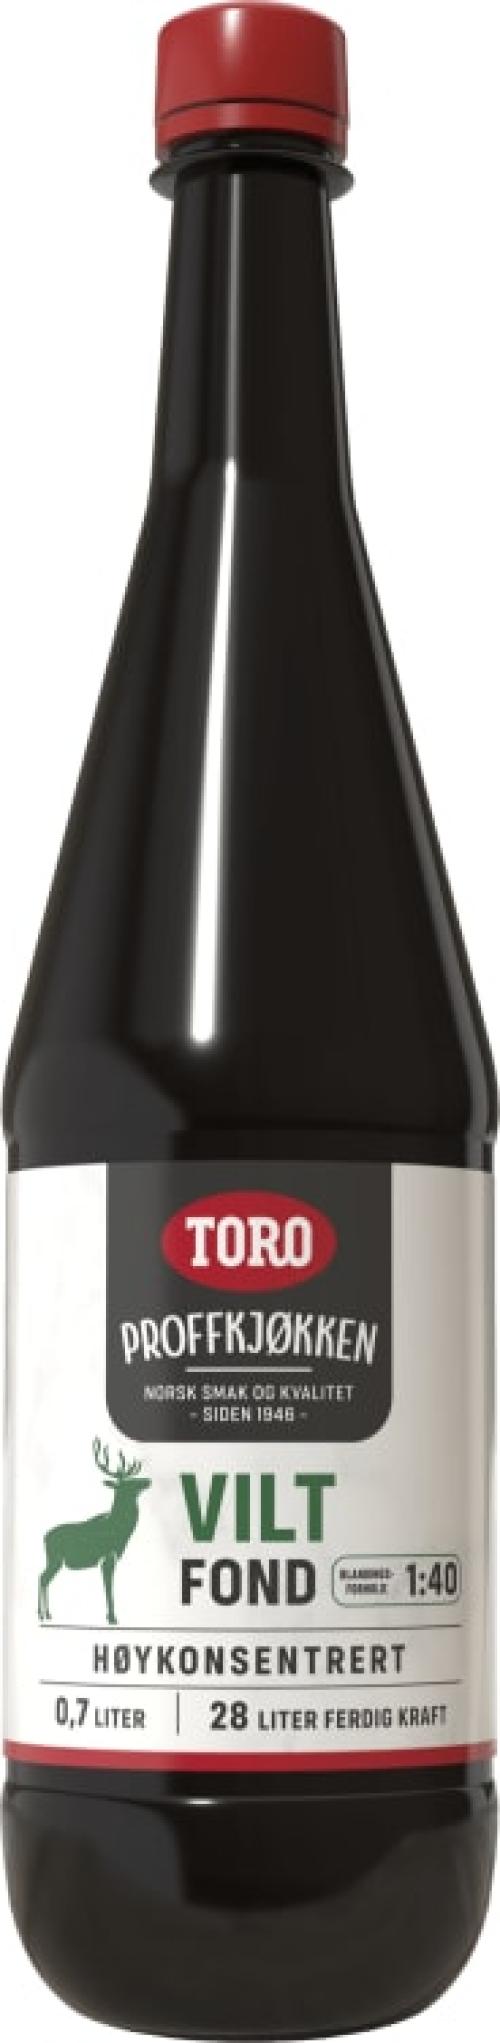 Toro VILT 7 dl hjemmelaget kvalitet!